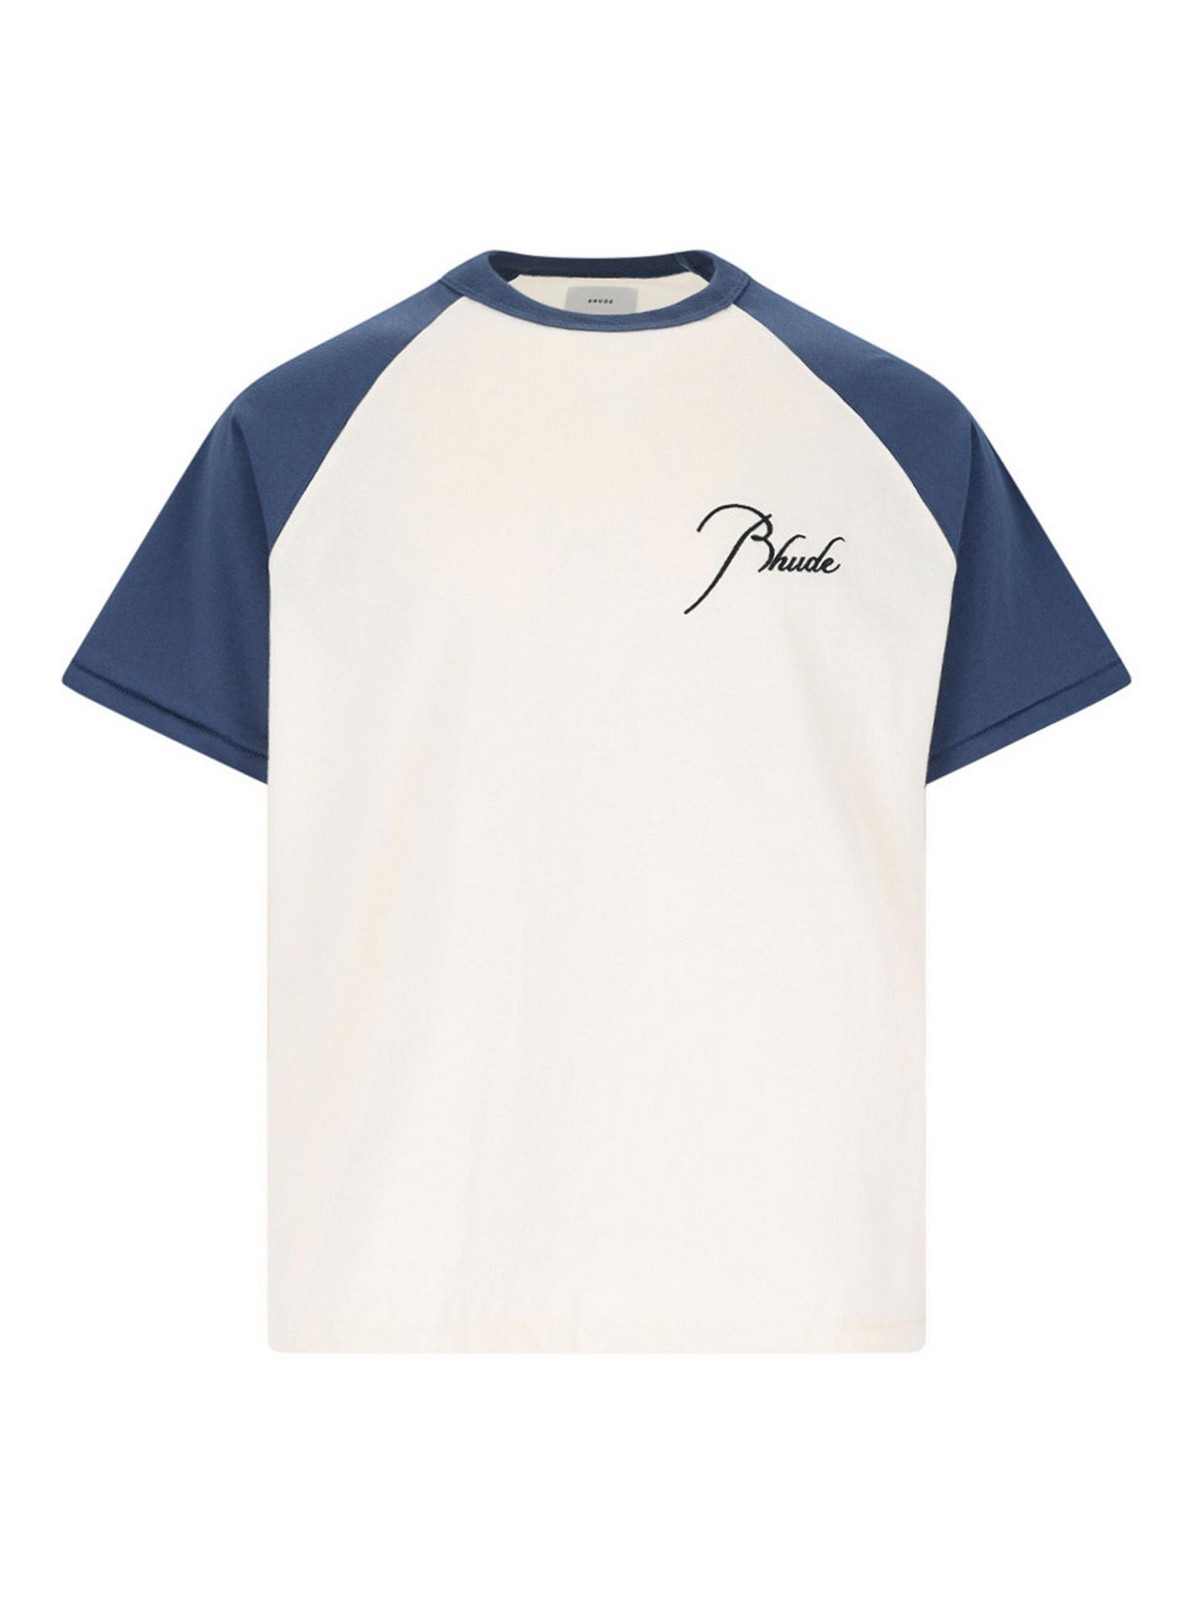 Shop Rhude Camiseta - Raglan In White